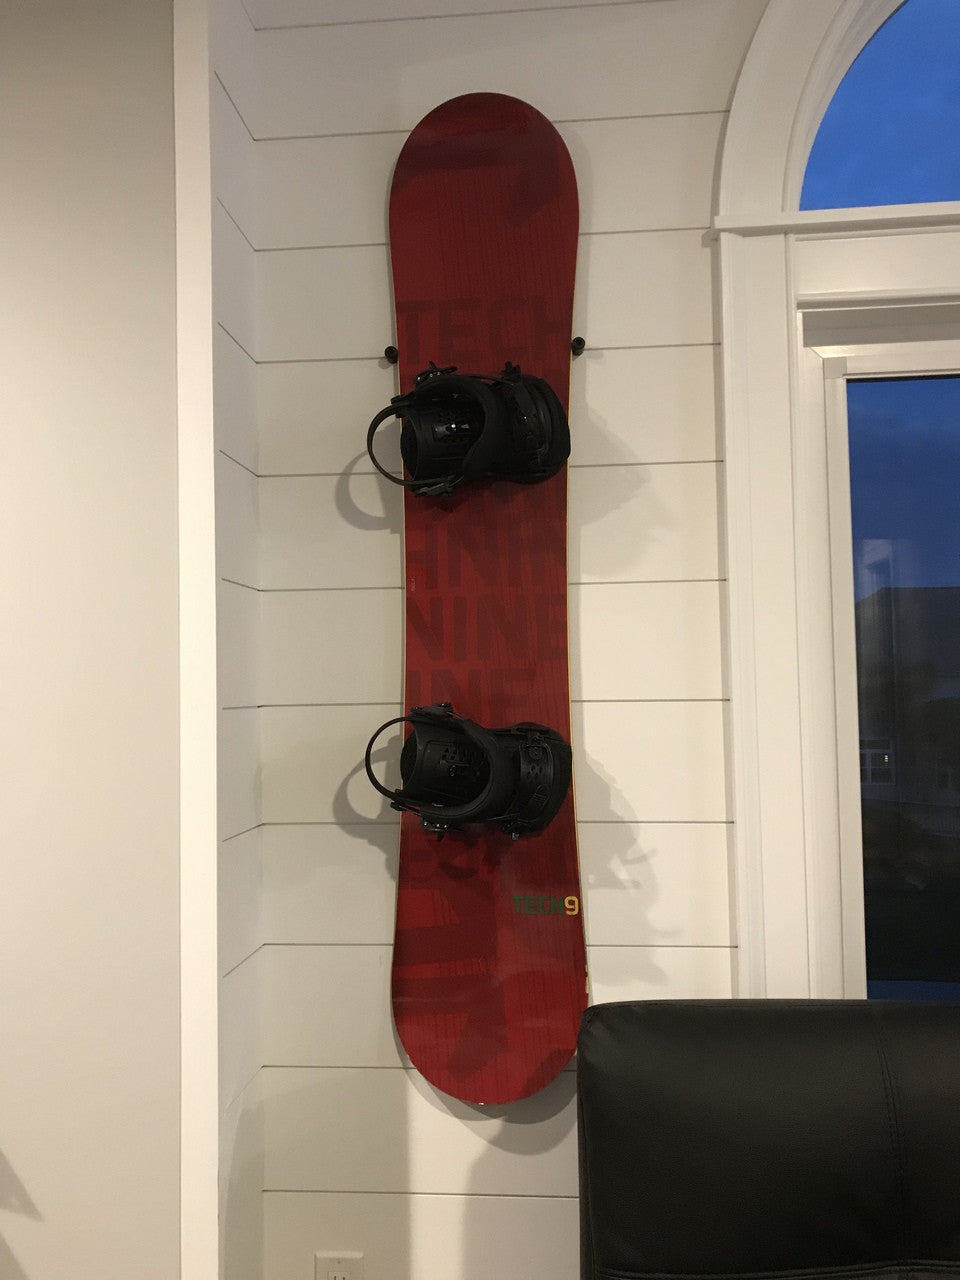 minimalistic snowboard display